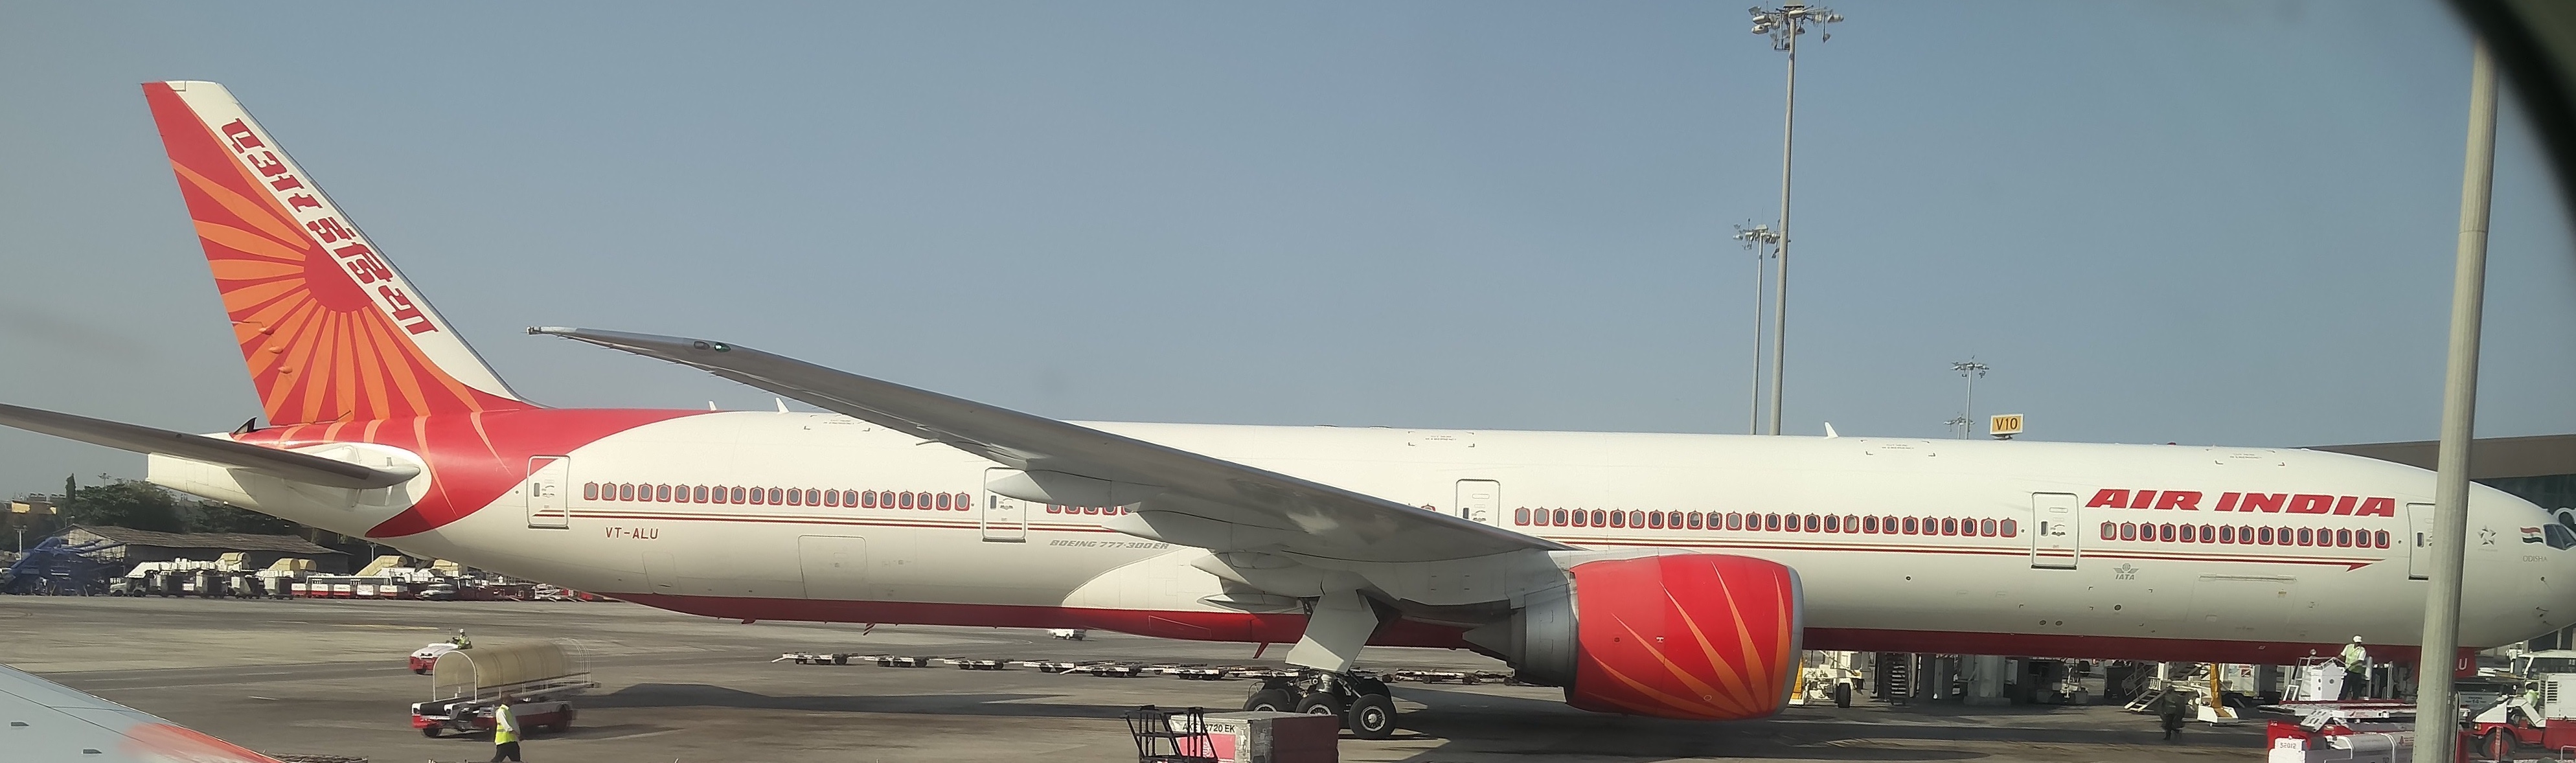 Air india 103 flight status